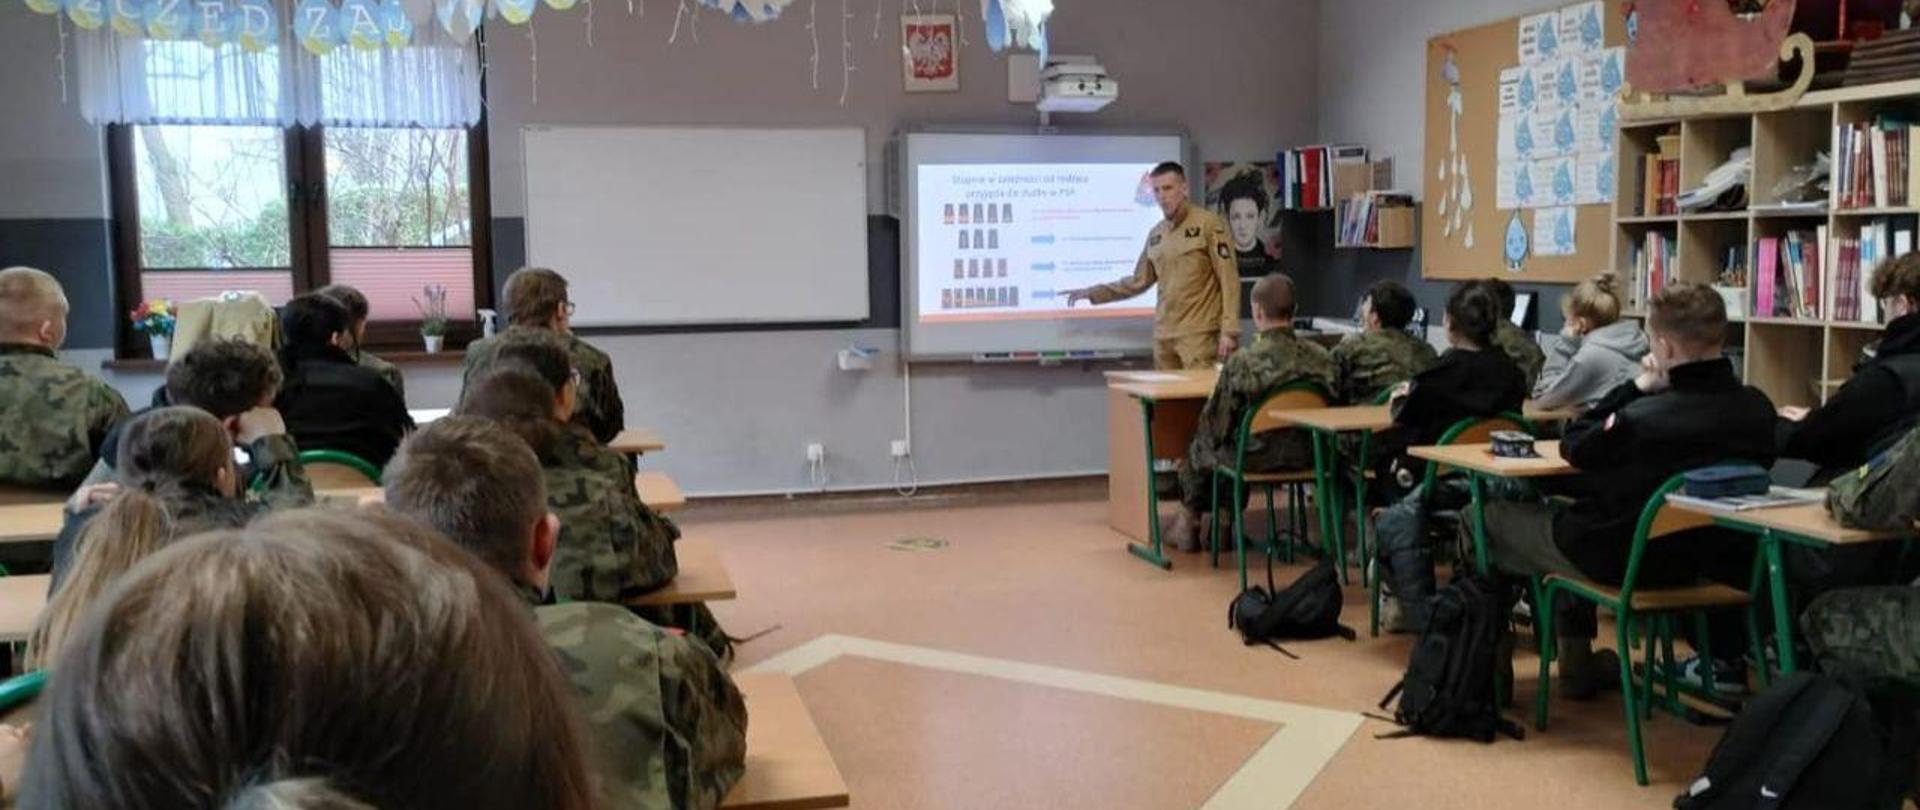 Zdjęcie wykonane w sali klasowej. Na pierwszym planie uczniowie klasy wojskowej ubrani w zielone moro. Na drugi planie, strażak w mundurze piaskowym stojący przy tablicy na której włączona jest prezentacja.